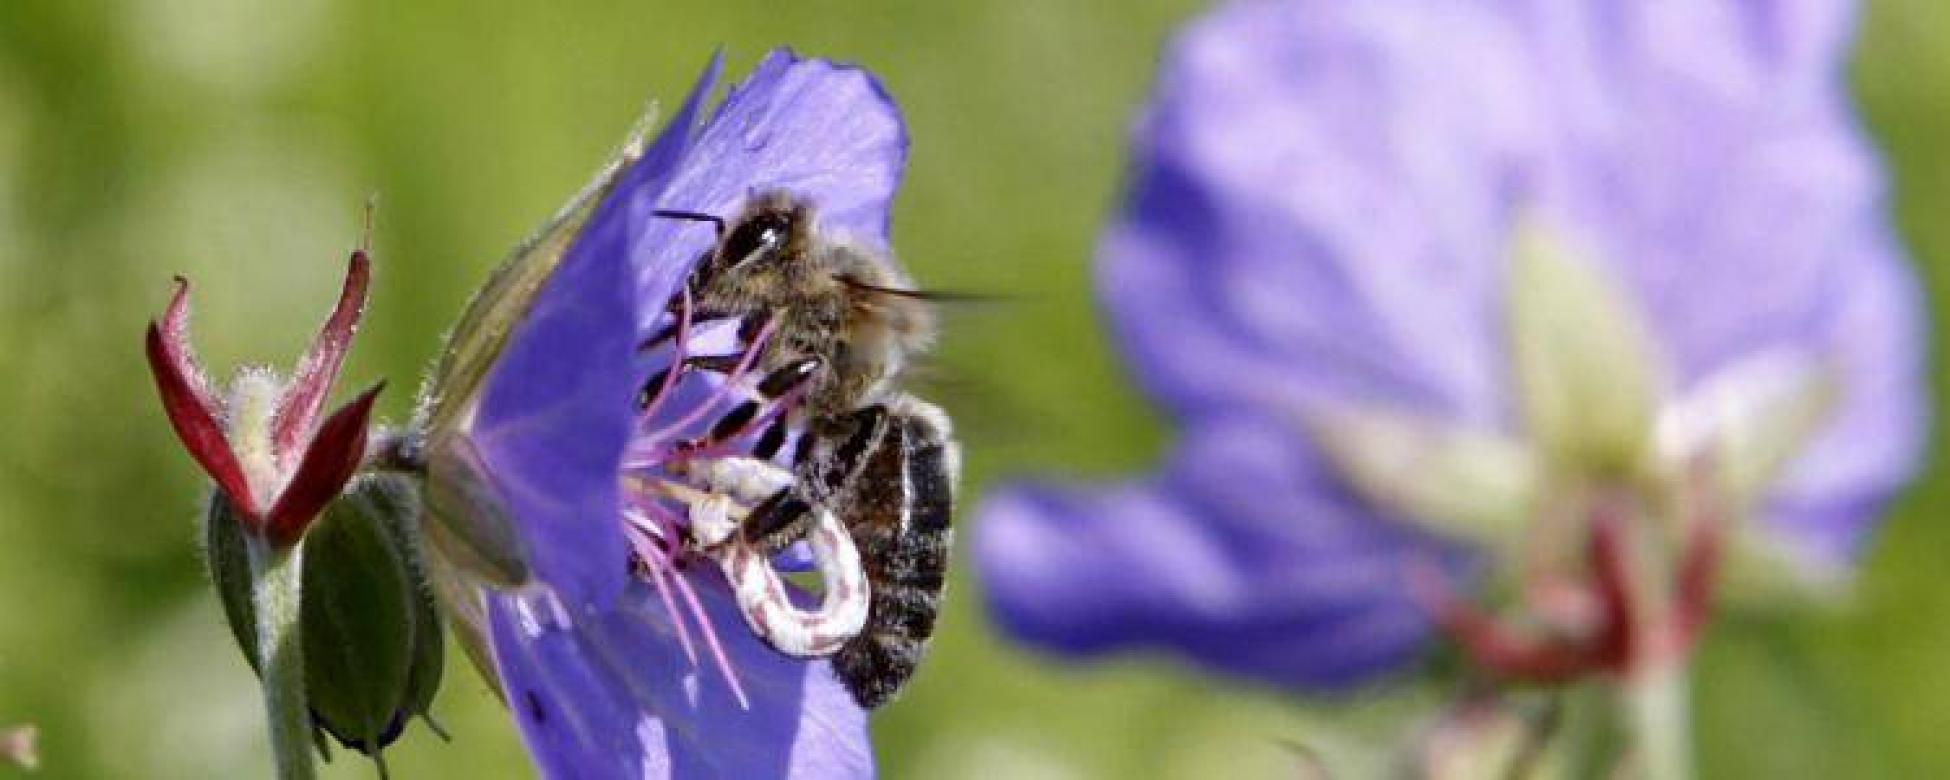 Ecologie: l'inquiétante disparition des abeilles | FranceSoir